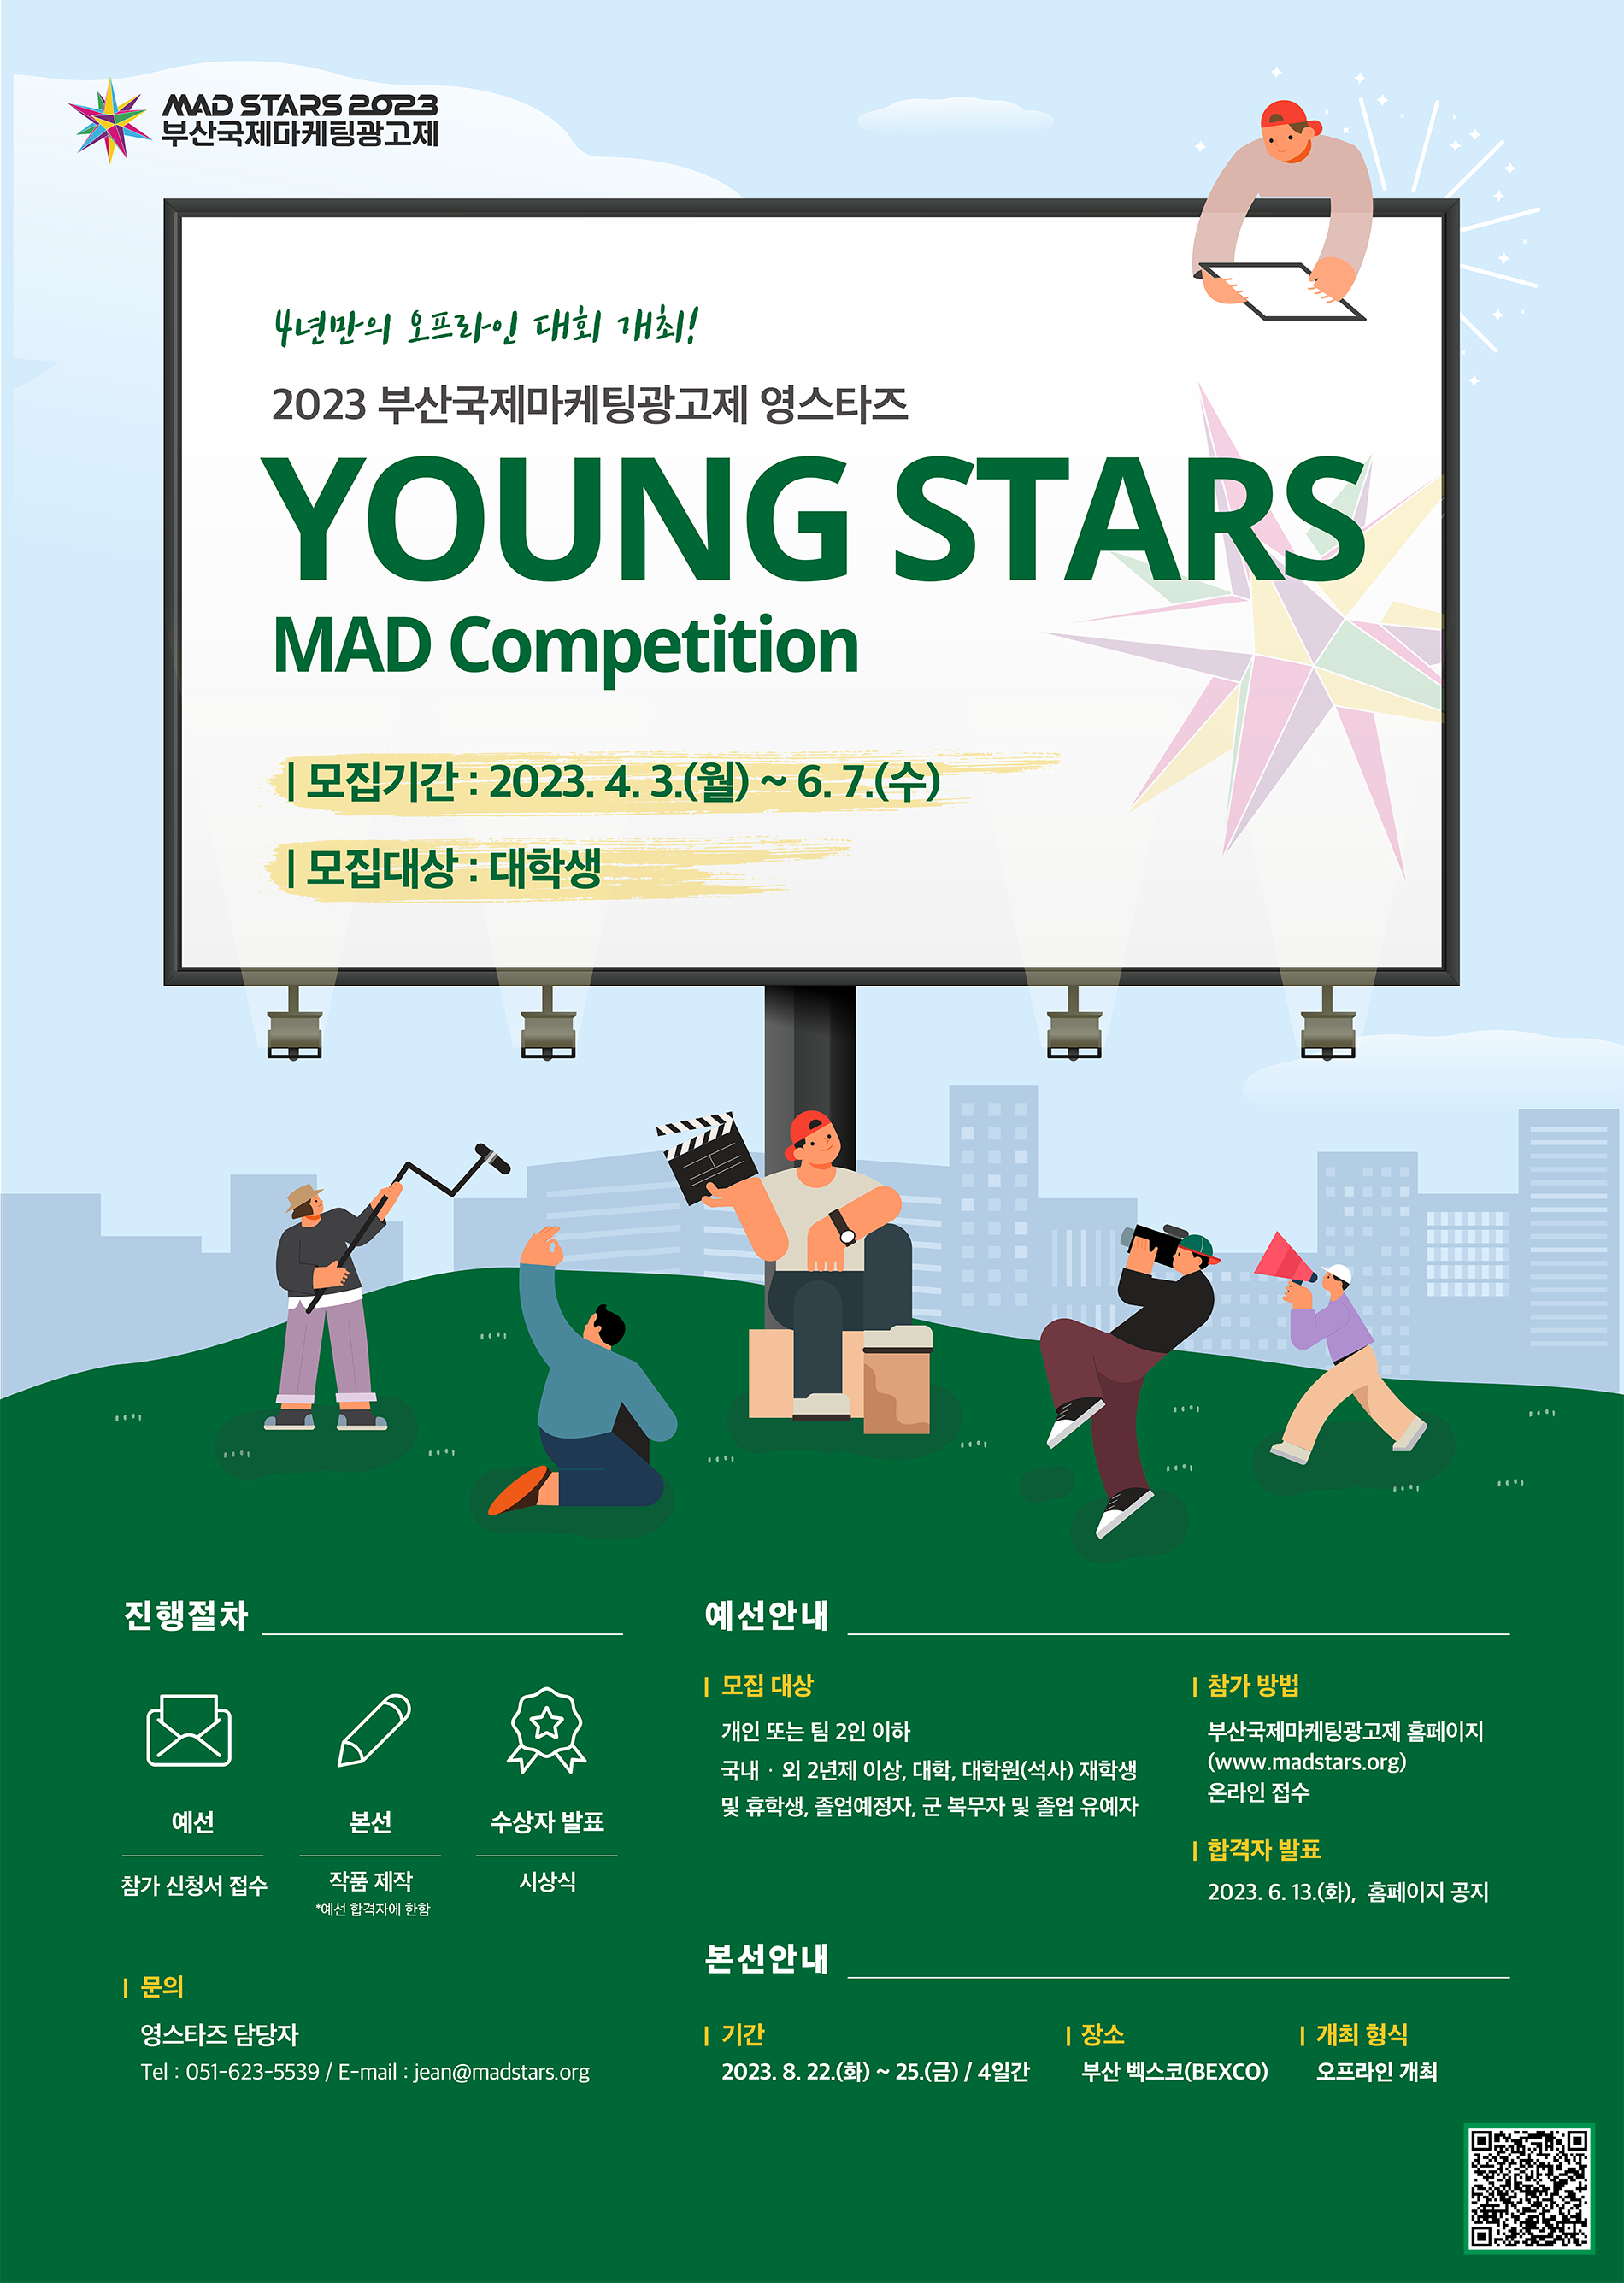 2023 영스타즈(Young Stars MAD Competition 2023)